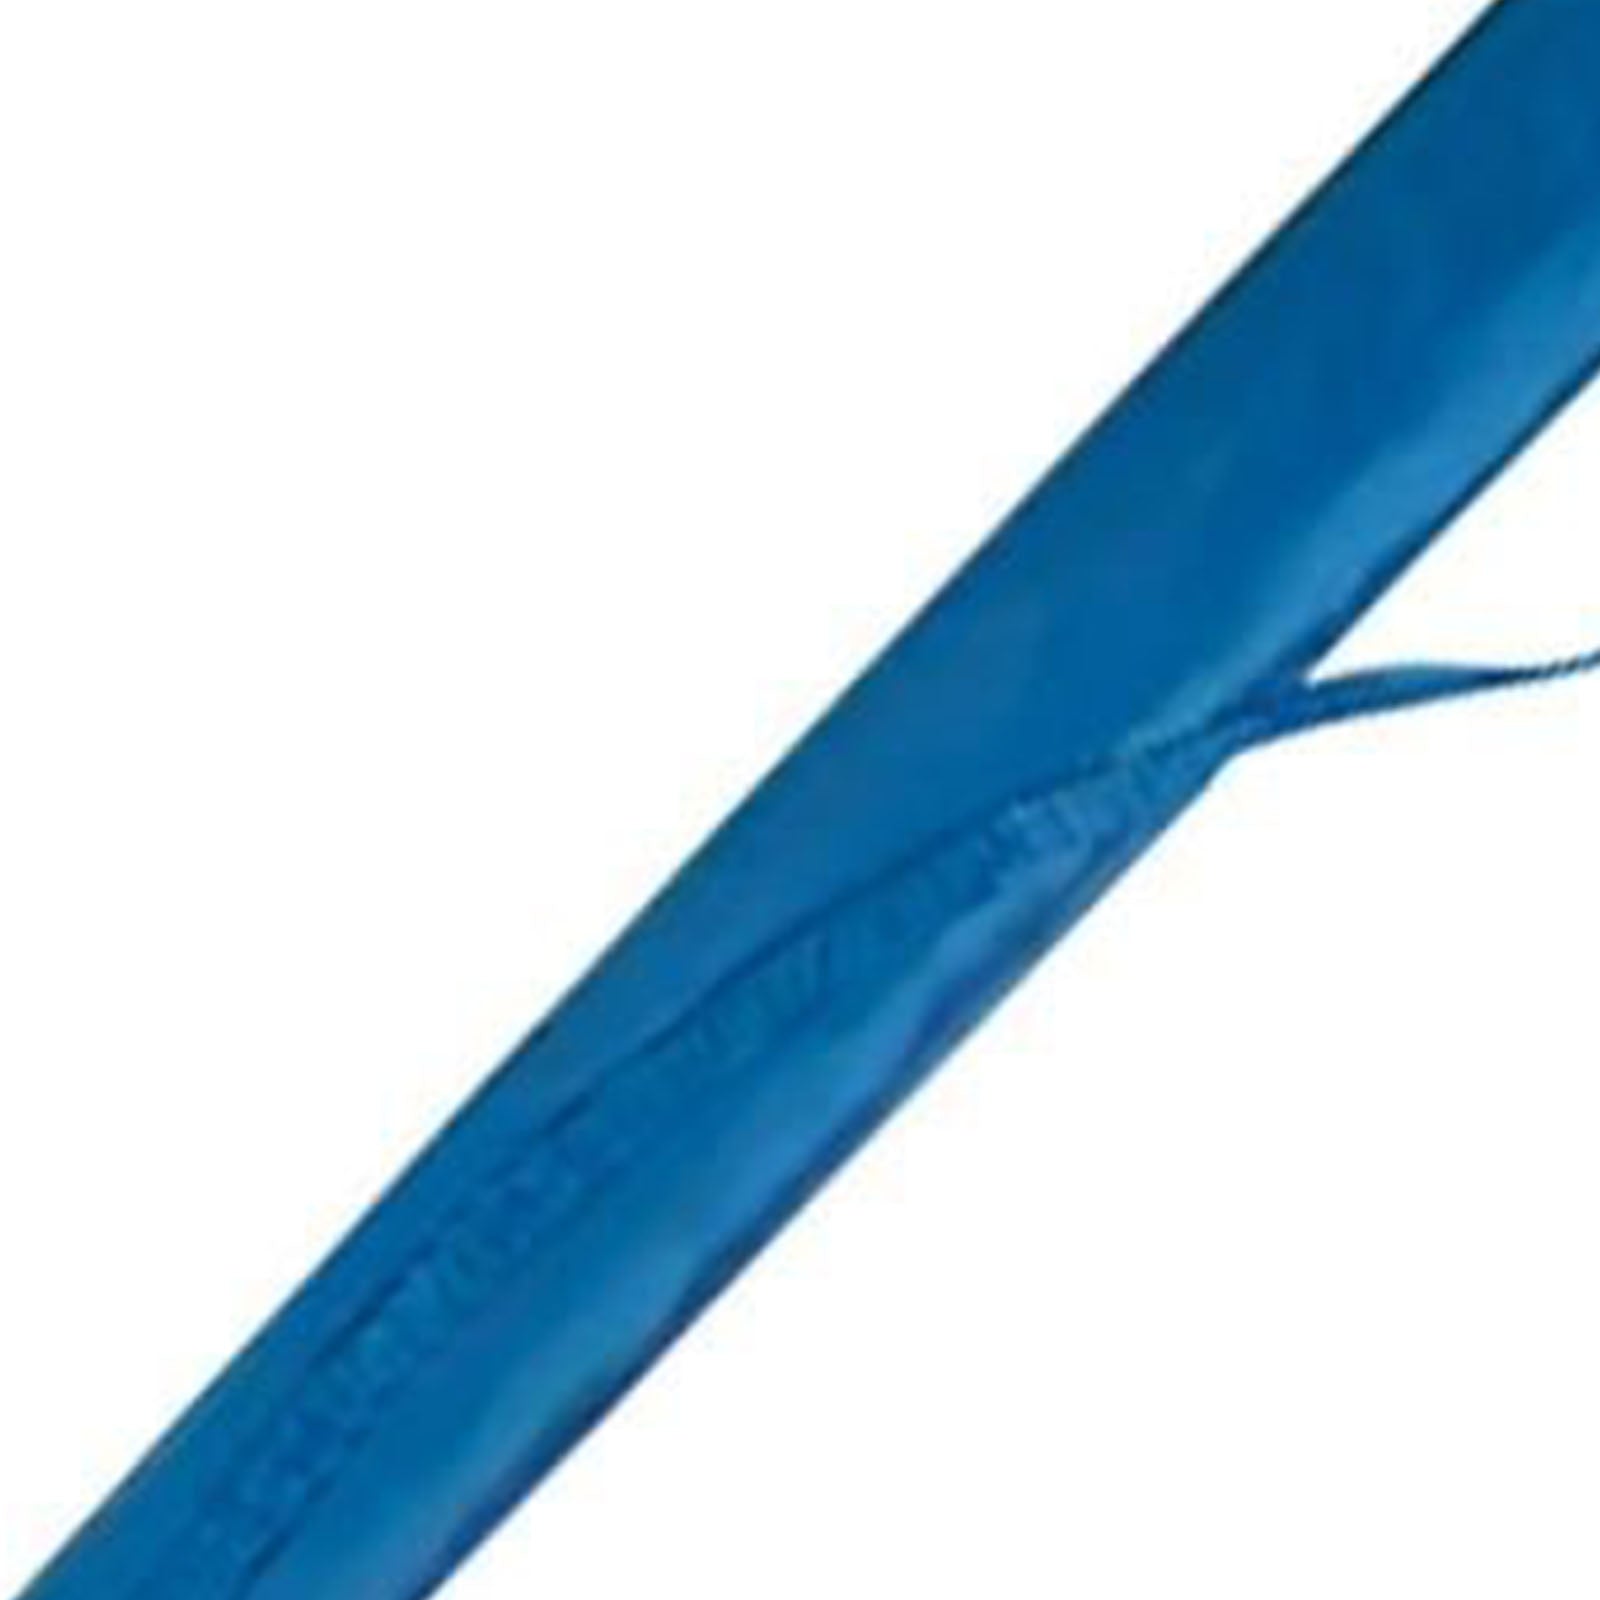 TD® Housse pour parasol de plage bleu solide et résistante parasol anti UV plage piscine transport protection étanche couleur bleu